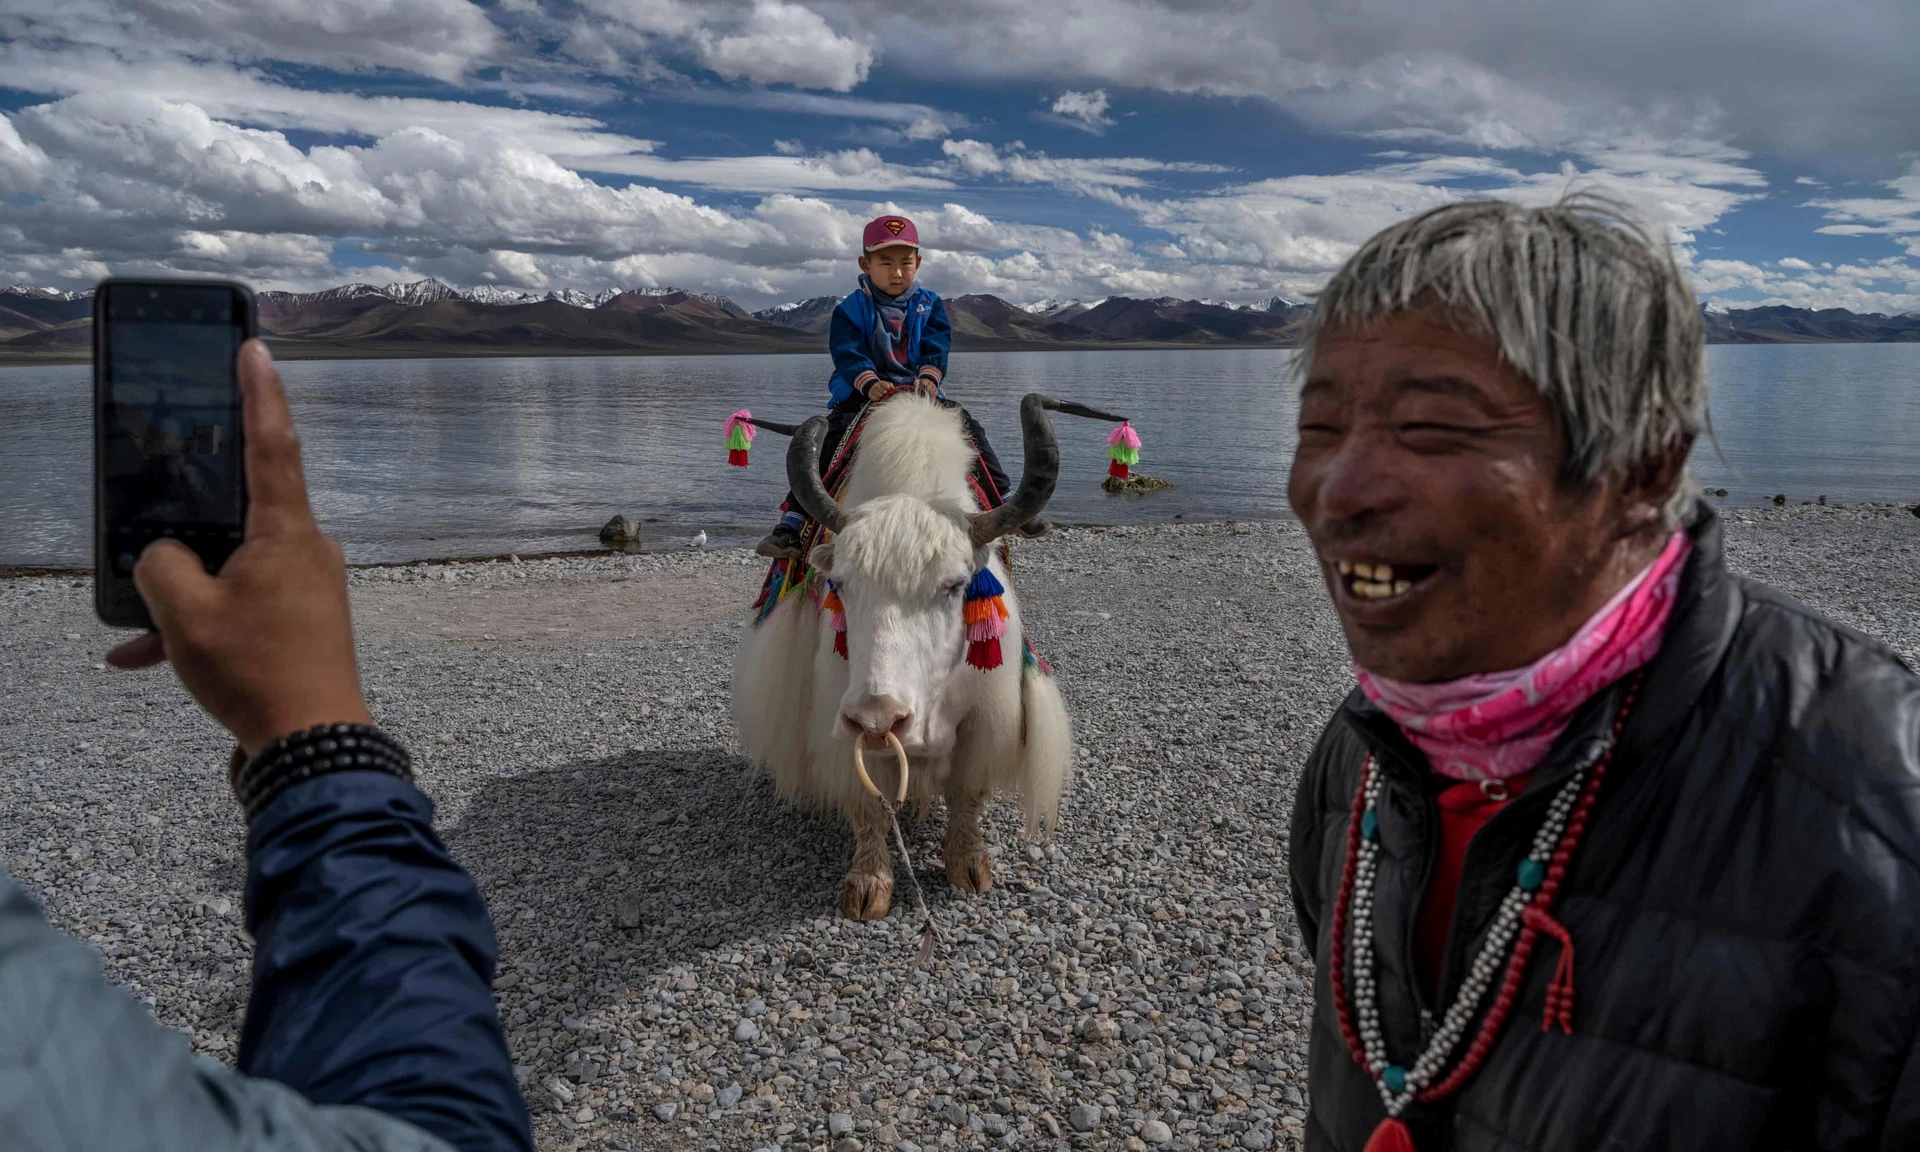 Một cậu bé được chụp ảnh khi đang cưỡi trên con yak bên bờ hồ Namtso. Cả bò yak lẫn hồ Namtso đều là biểu tượng của Tây Tạng. Con vật kia có vai trò lớn với đời sống người dân. Nó cung cấp lông, sữa, phục vụ cuộc sống của người Tây Tạng. Còn Namtso được xem là hồ nước thiêng của vùng đất này.